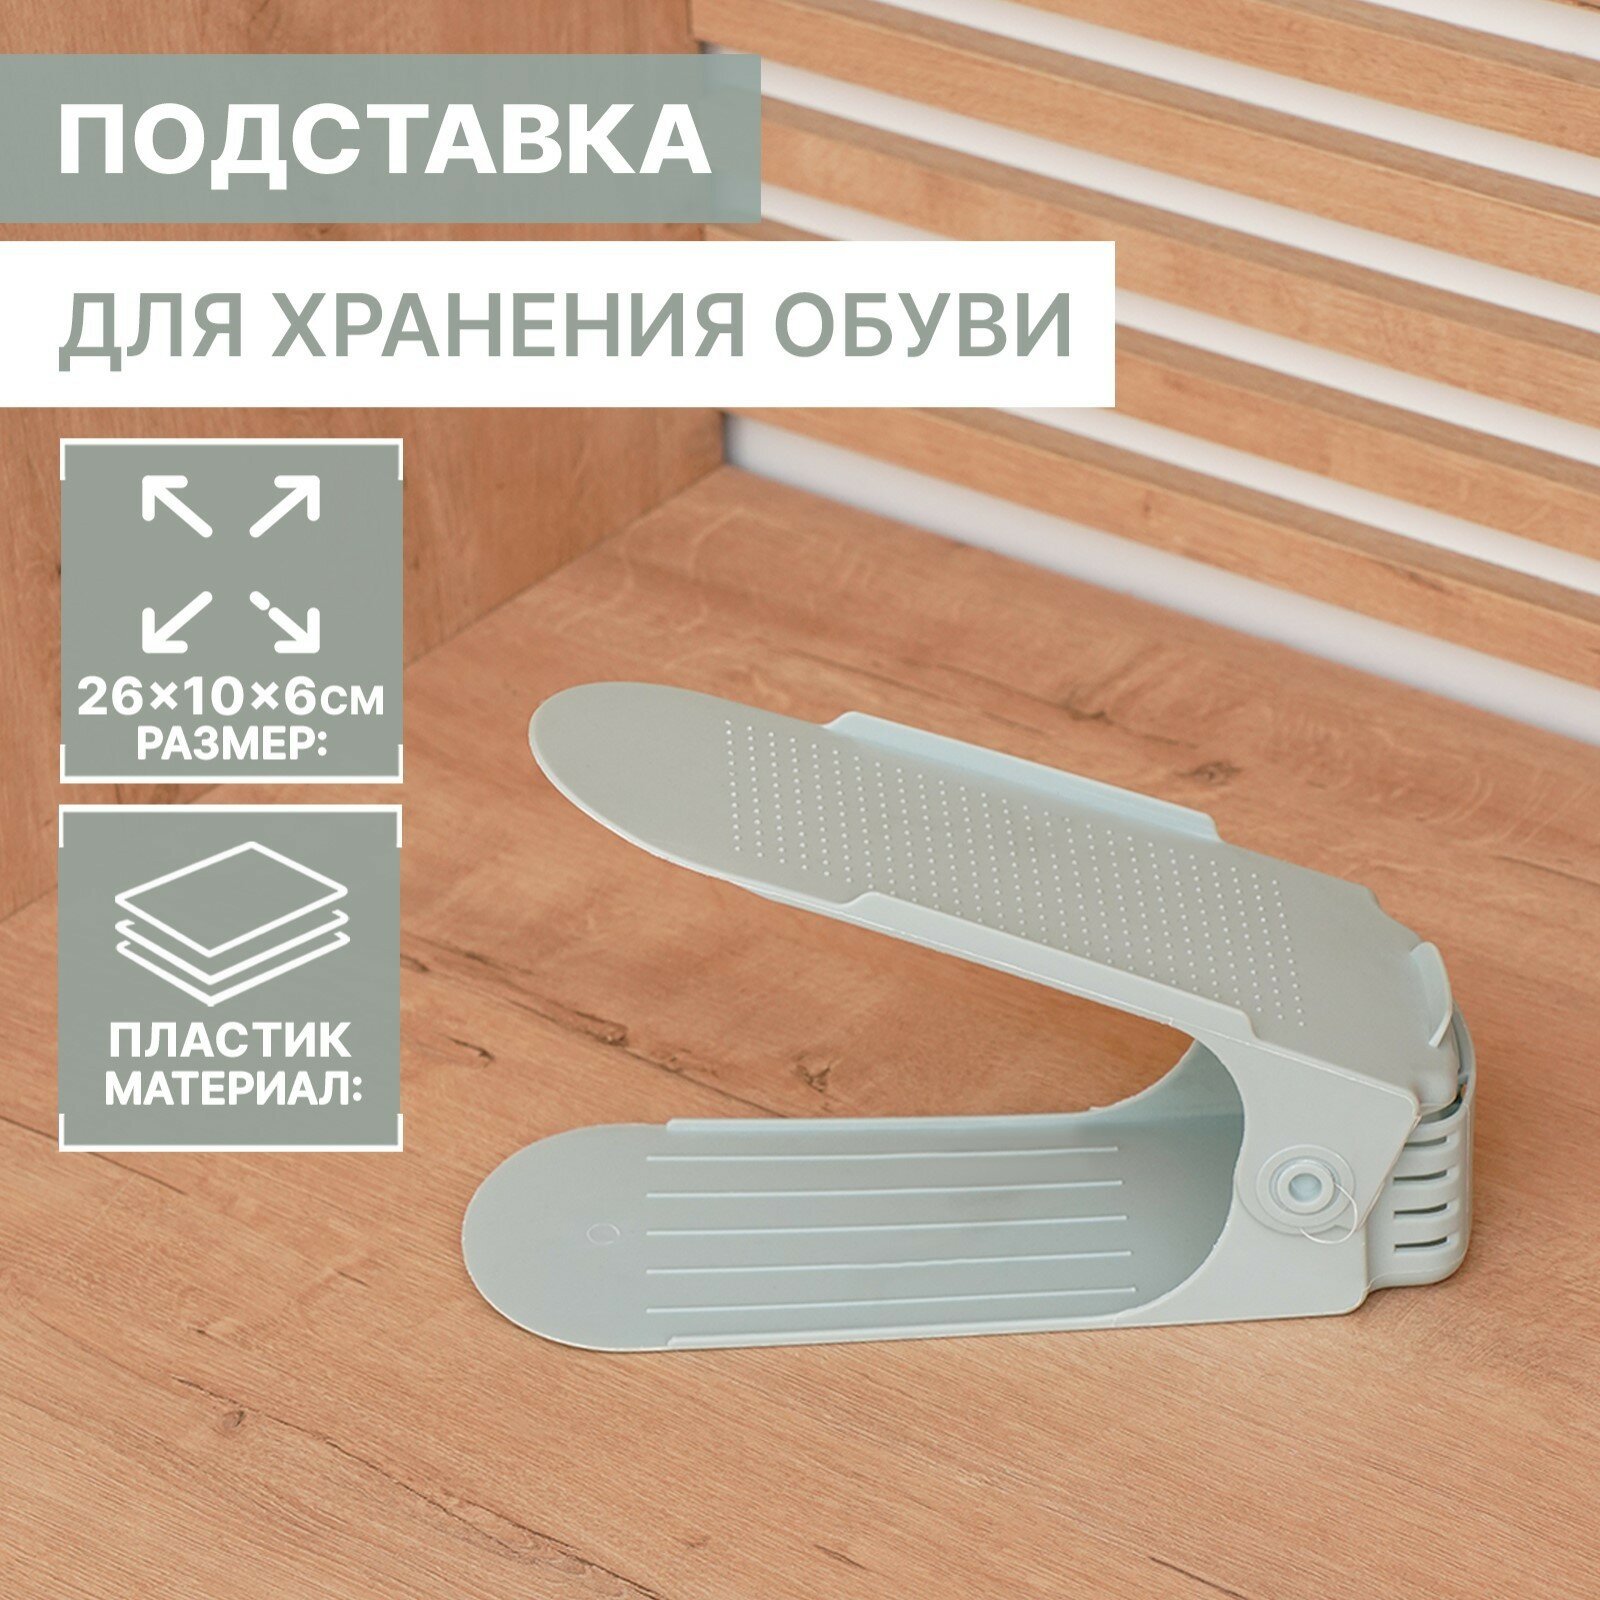 Подставка для хранения обуви регулируемая, 26×10×6 см, цвет микс